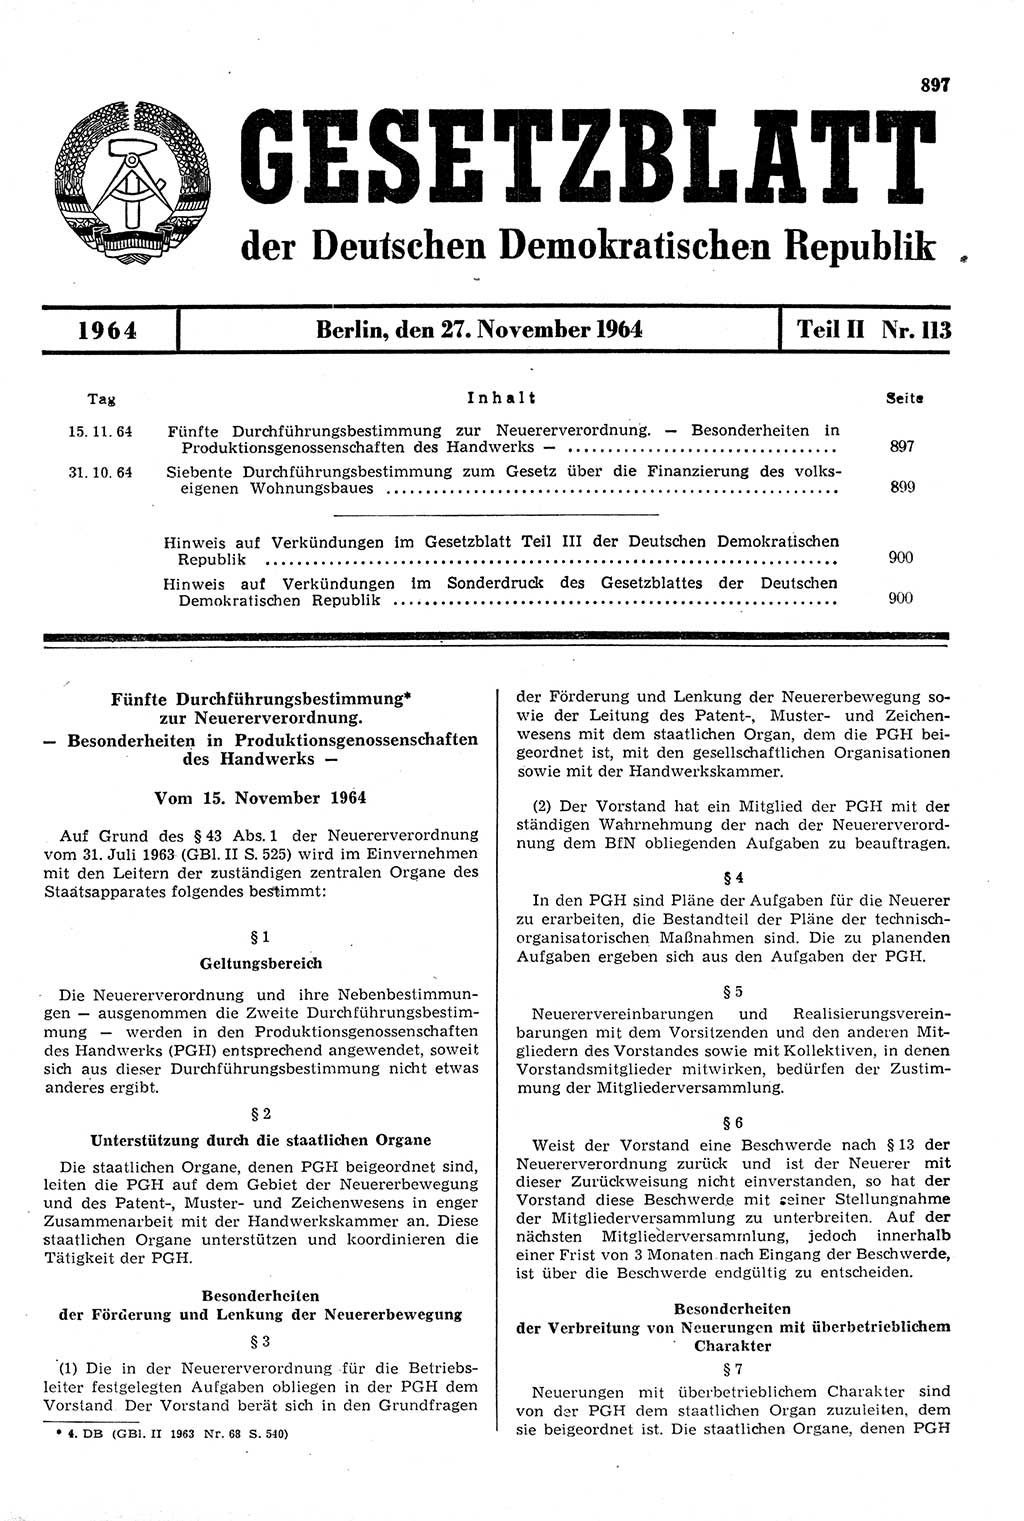 Gesetzblatt (GBl.) der Deutschen Demokratischen Republik (DDR) Teil ⅠⅠ 1964, Seite 897 (GBl. DDR ⅠⅠ 1964, S. 897)